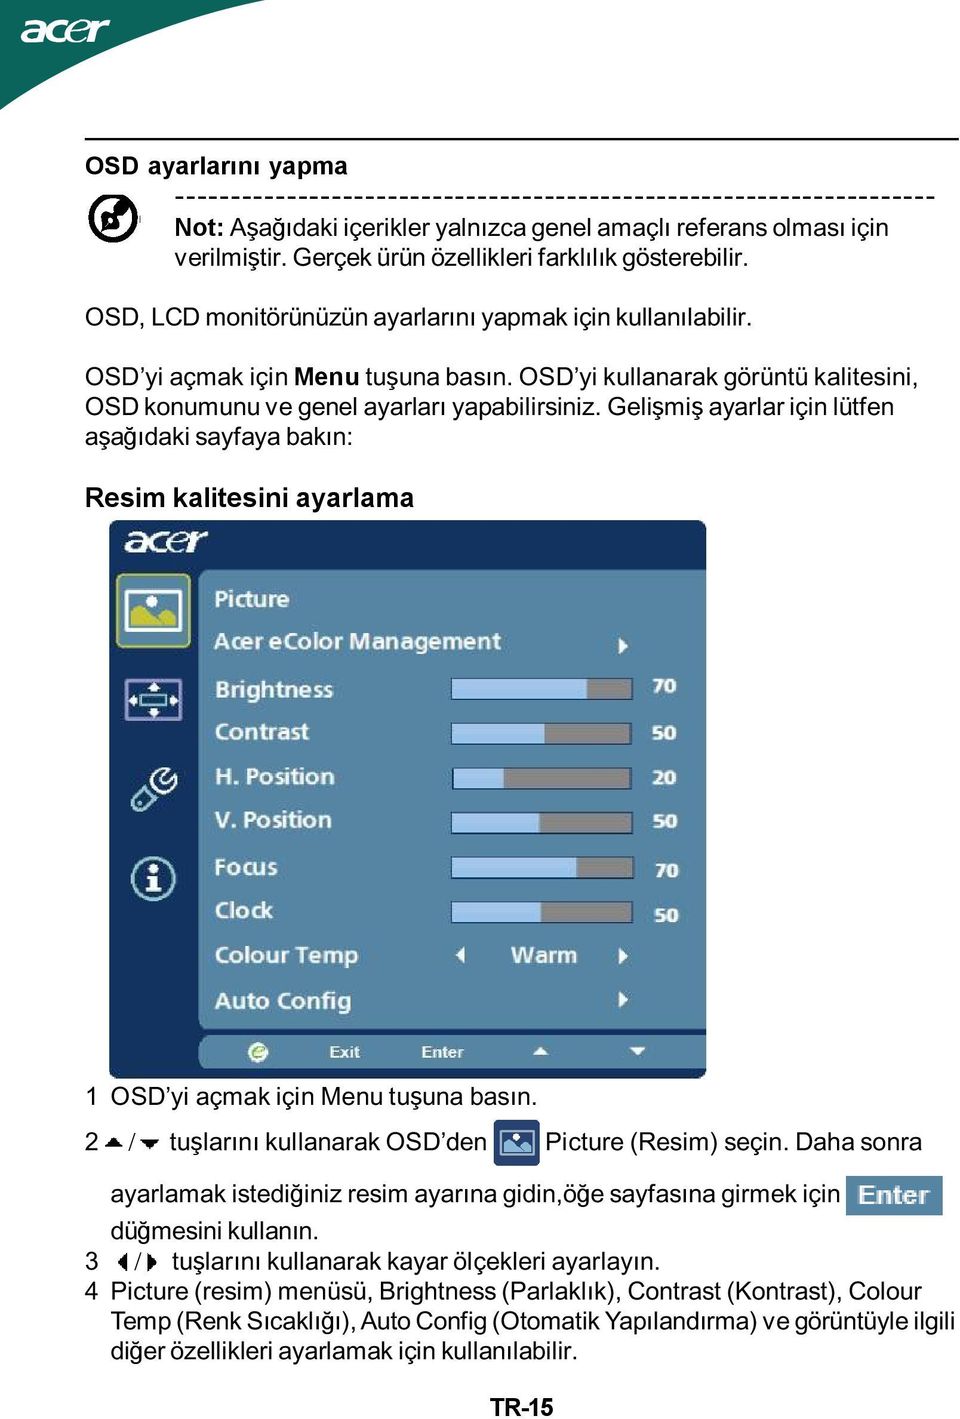 OSD yi kullanarak görüntü kalitesini, OSD konumunu ve genel ayarları yapabilirsiniz.